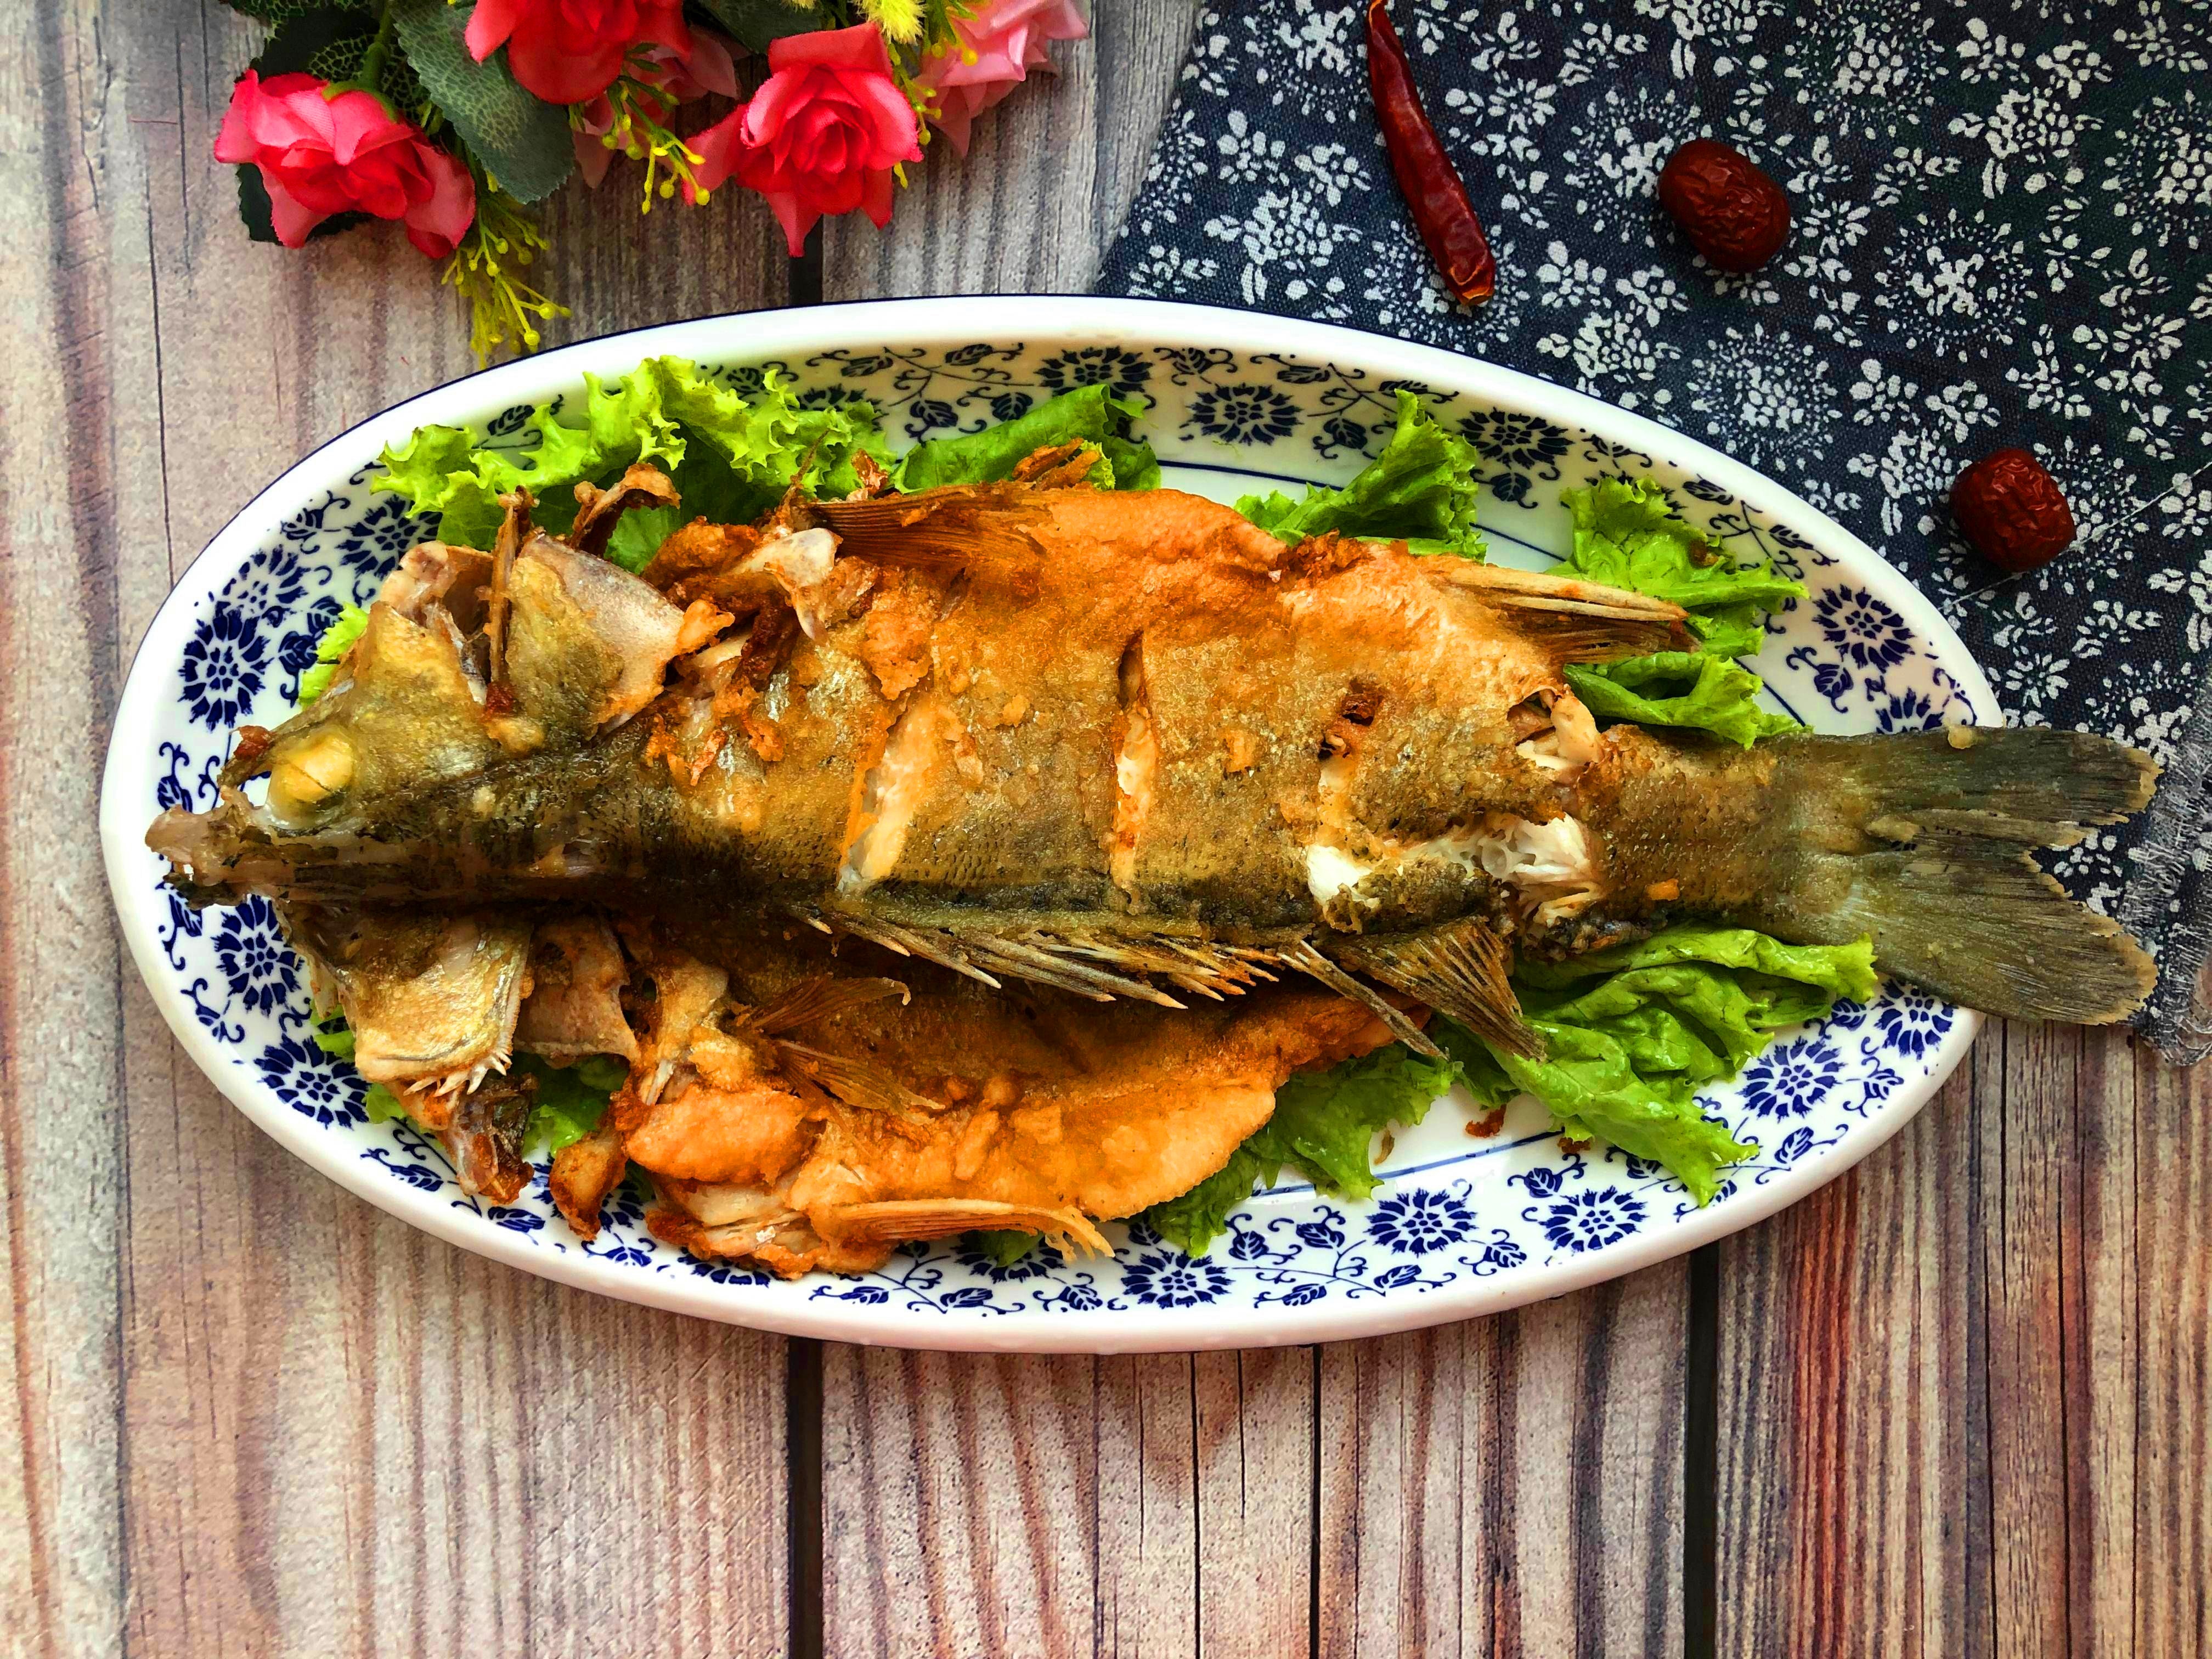 厨师给这道菜起的名字叫蒜香鲈鱼,口味也主要是以蒜香味为主,海鲈鱼